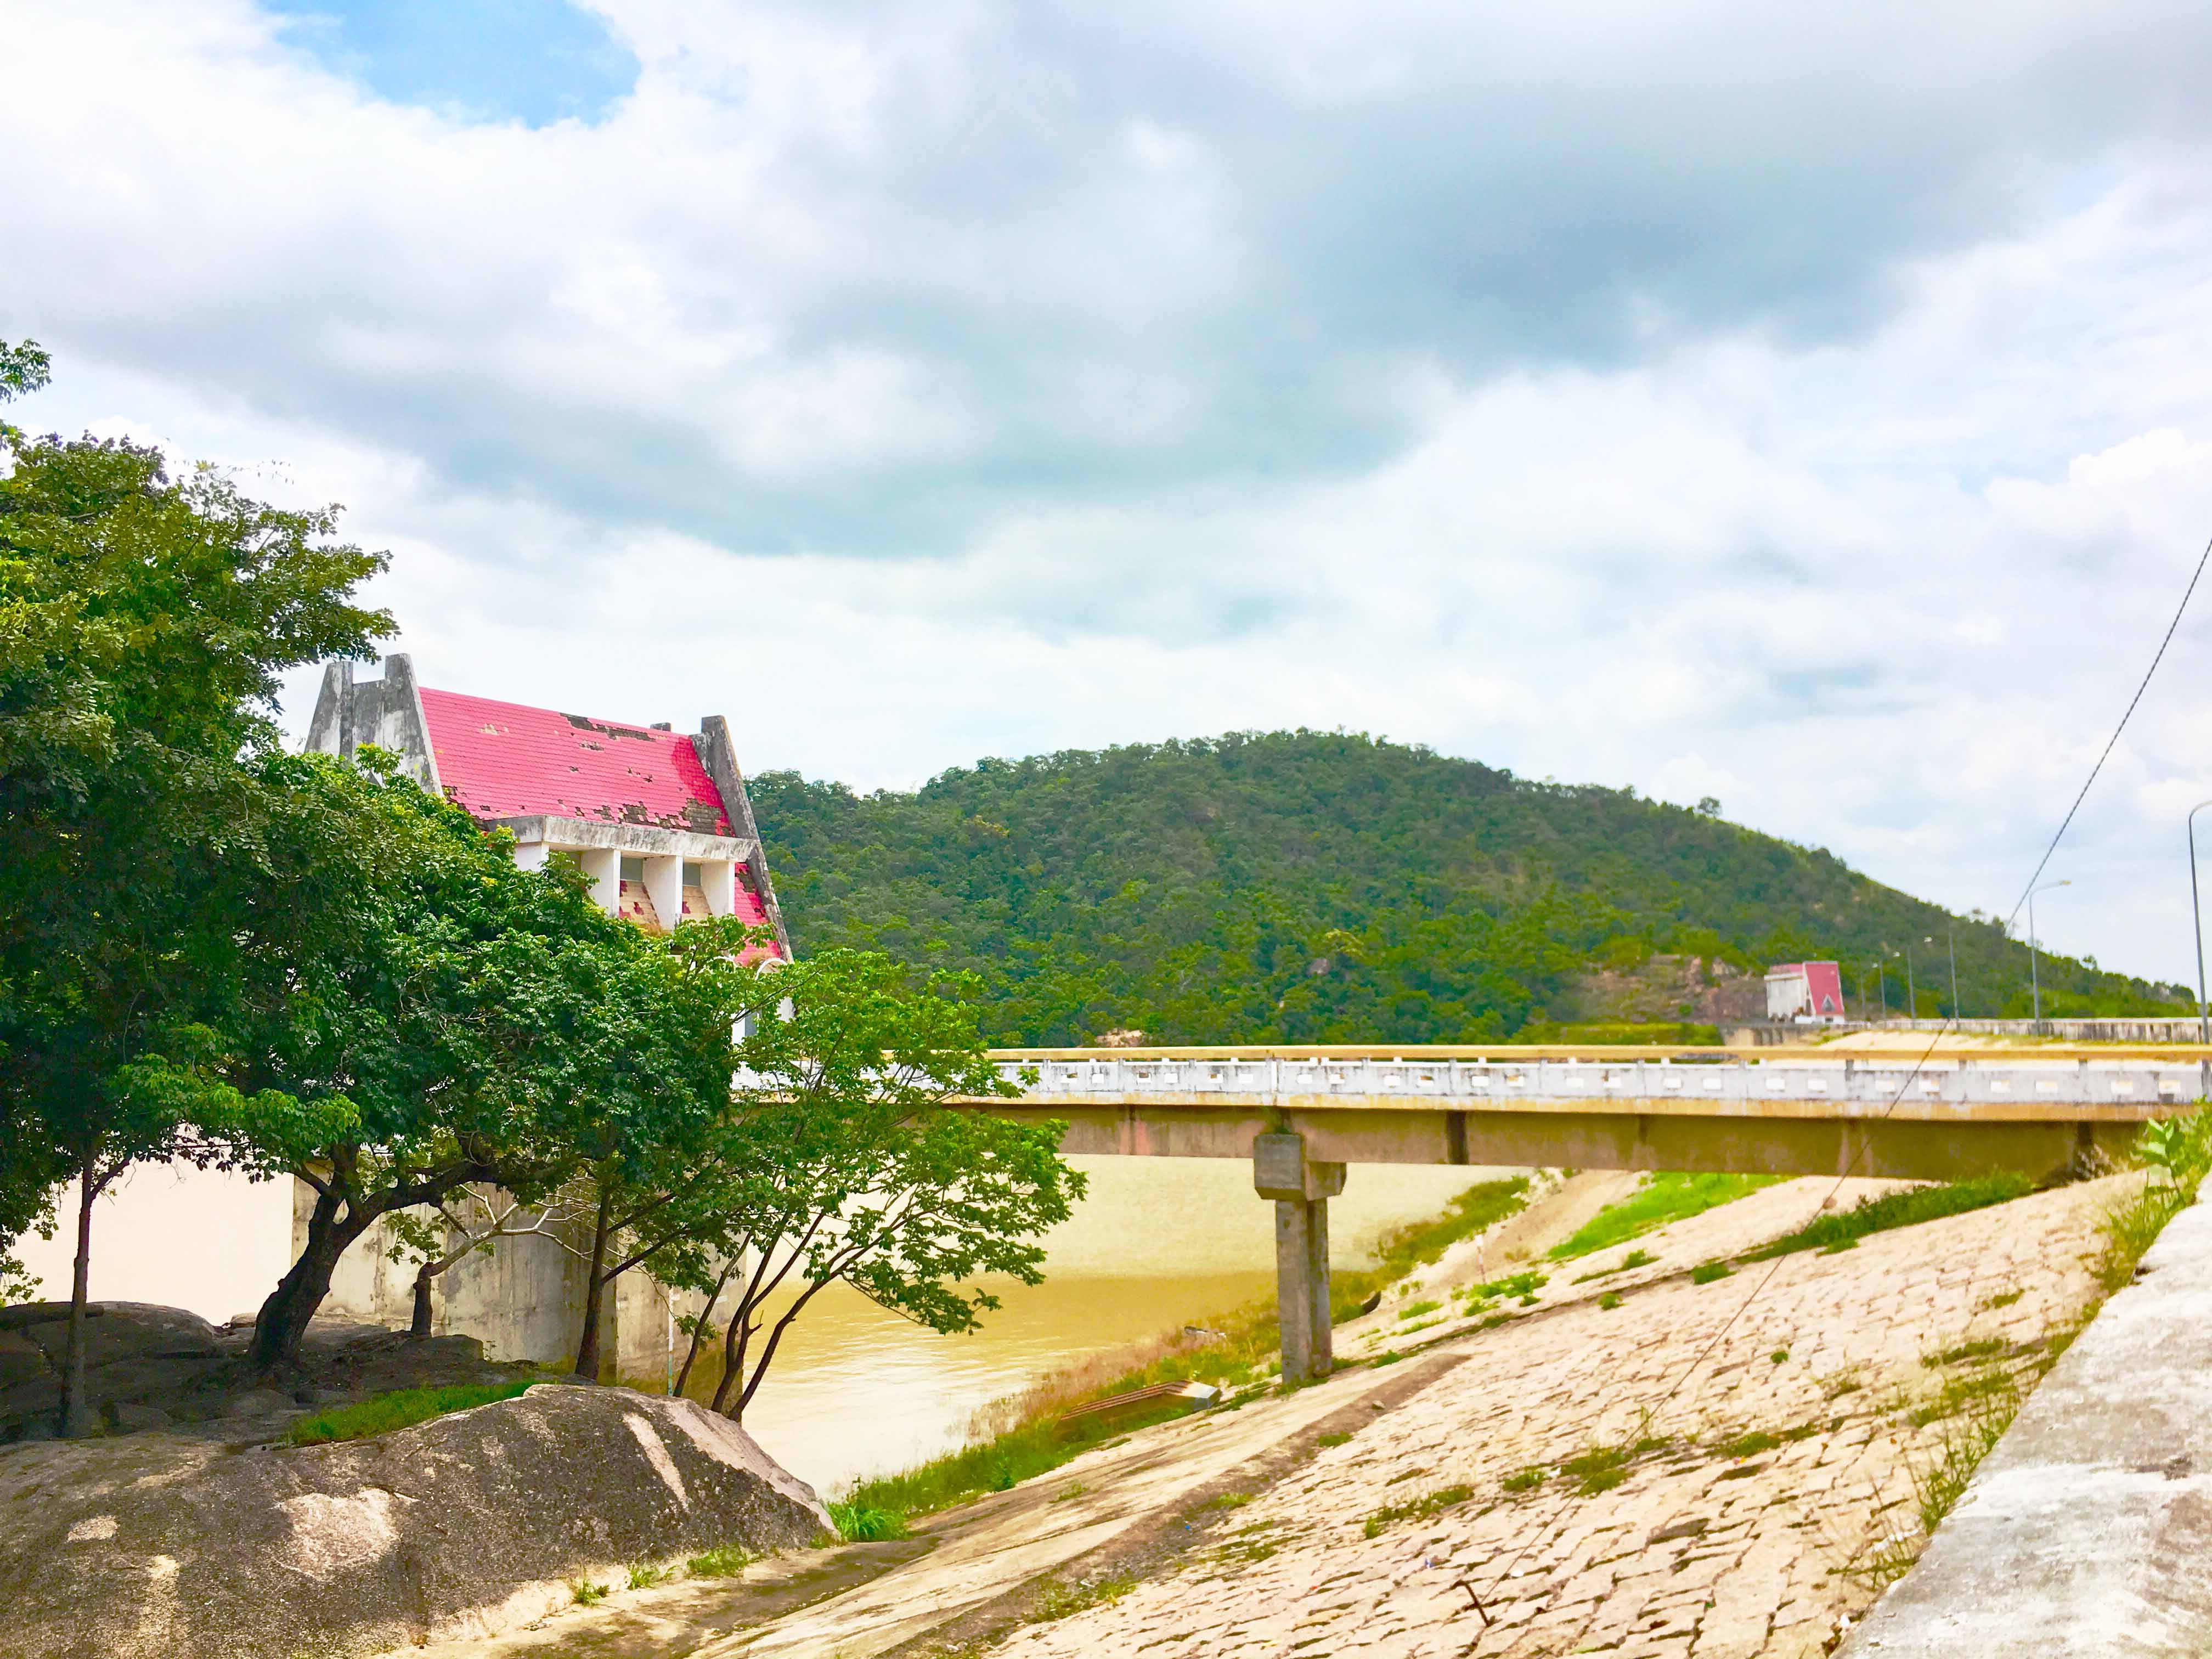 Hồ thủy lợi Ayun Hạ được hình thành khi chặn dòng sông Ayun vào đầu năm 1994. Đập chính và cửa cấp nước của công trình hồ thủy lợi Ayun Hạ nằm trên địa bàn xã Chư A Thai (huyện Phú Thiện), còn vùng ngập chính của hồ thuộc địa phận xã Hbông (huyện Chư Sê). Giờ đây, hồ Ayun Hạ trở thành một thắng cảnh thu hút khách du lịch của huyện Phú Thiện.